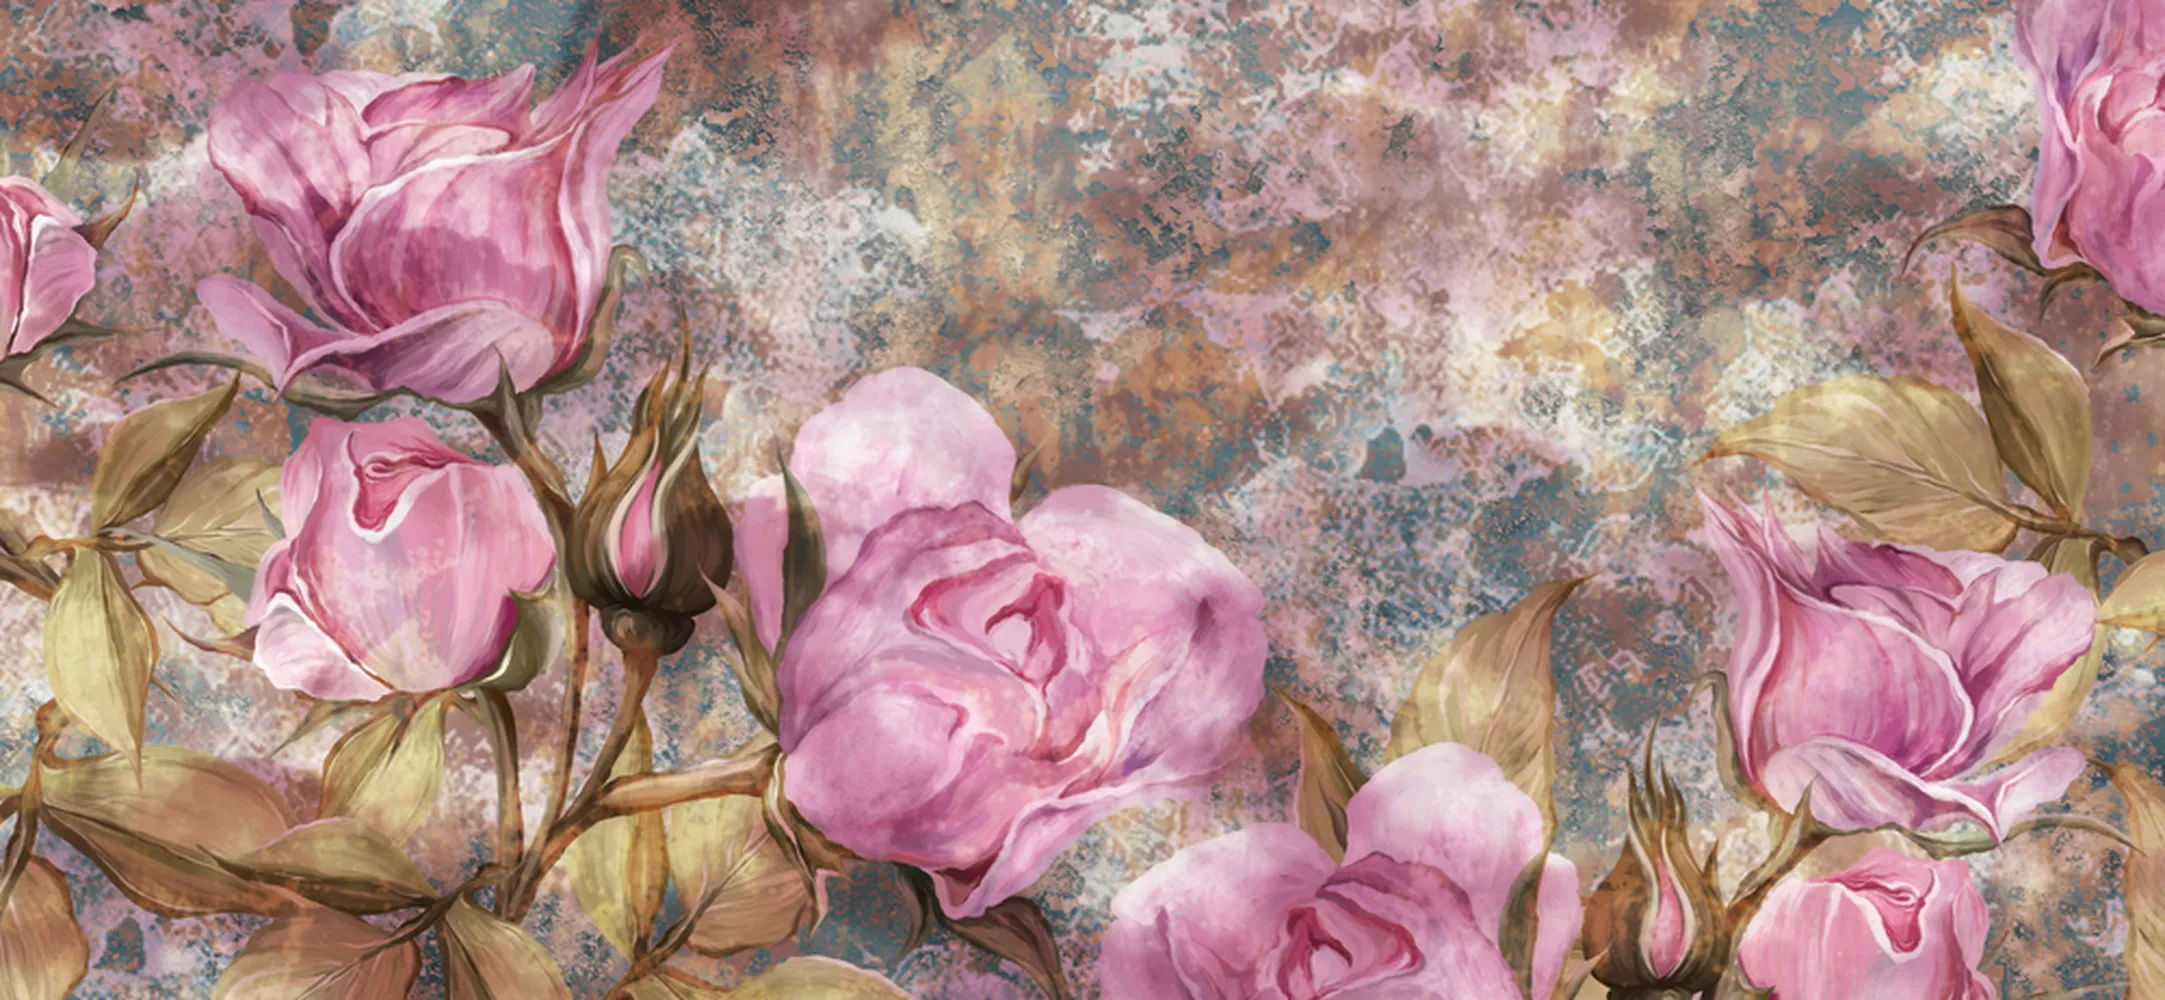 کاغذ دیواری نقاشی آبرنگ طرح گل رز روی زمینه پتینه